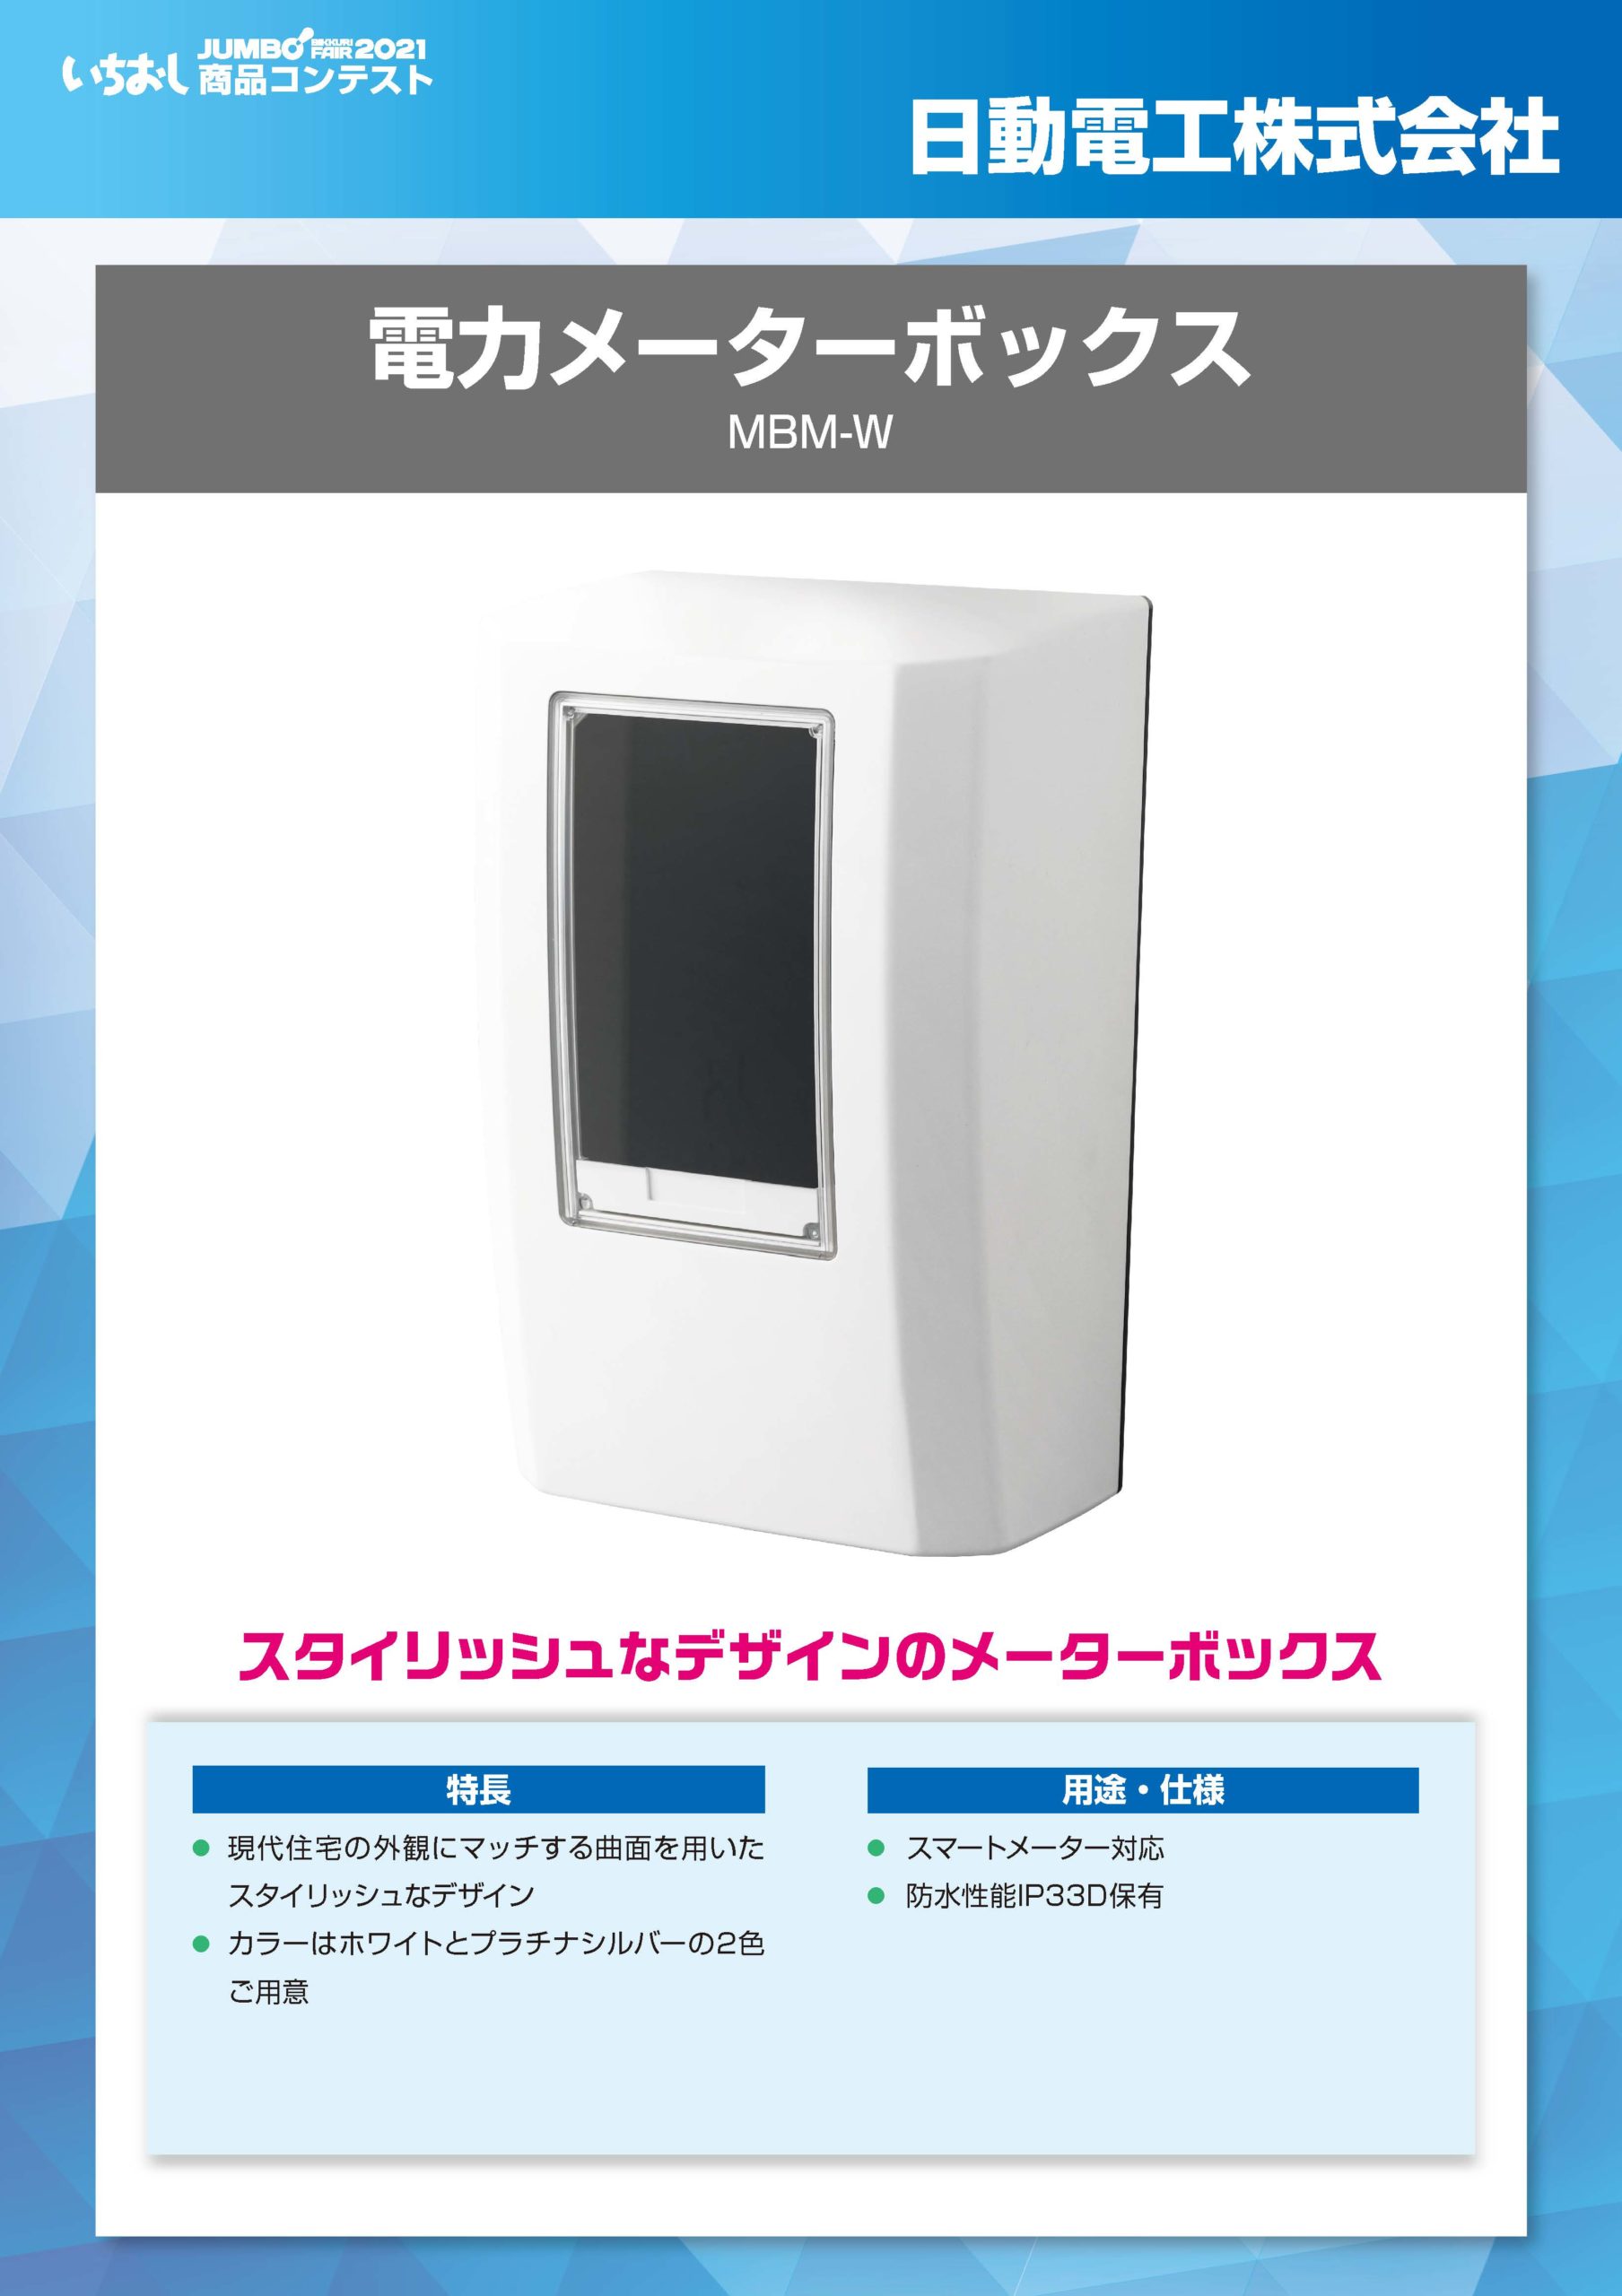 「電力メーターボックス」日動電工株式会社の画像